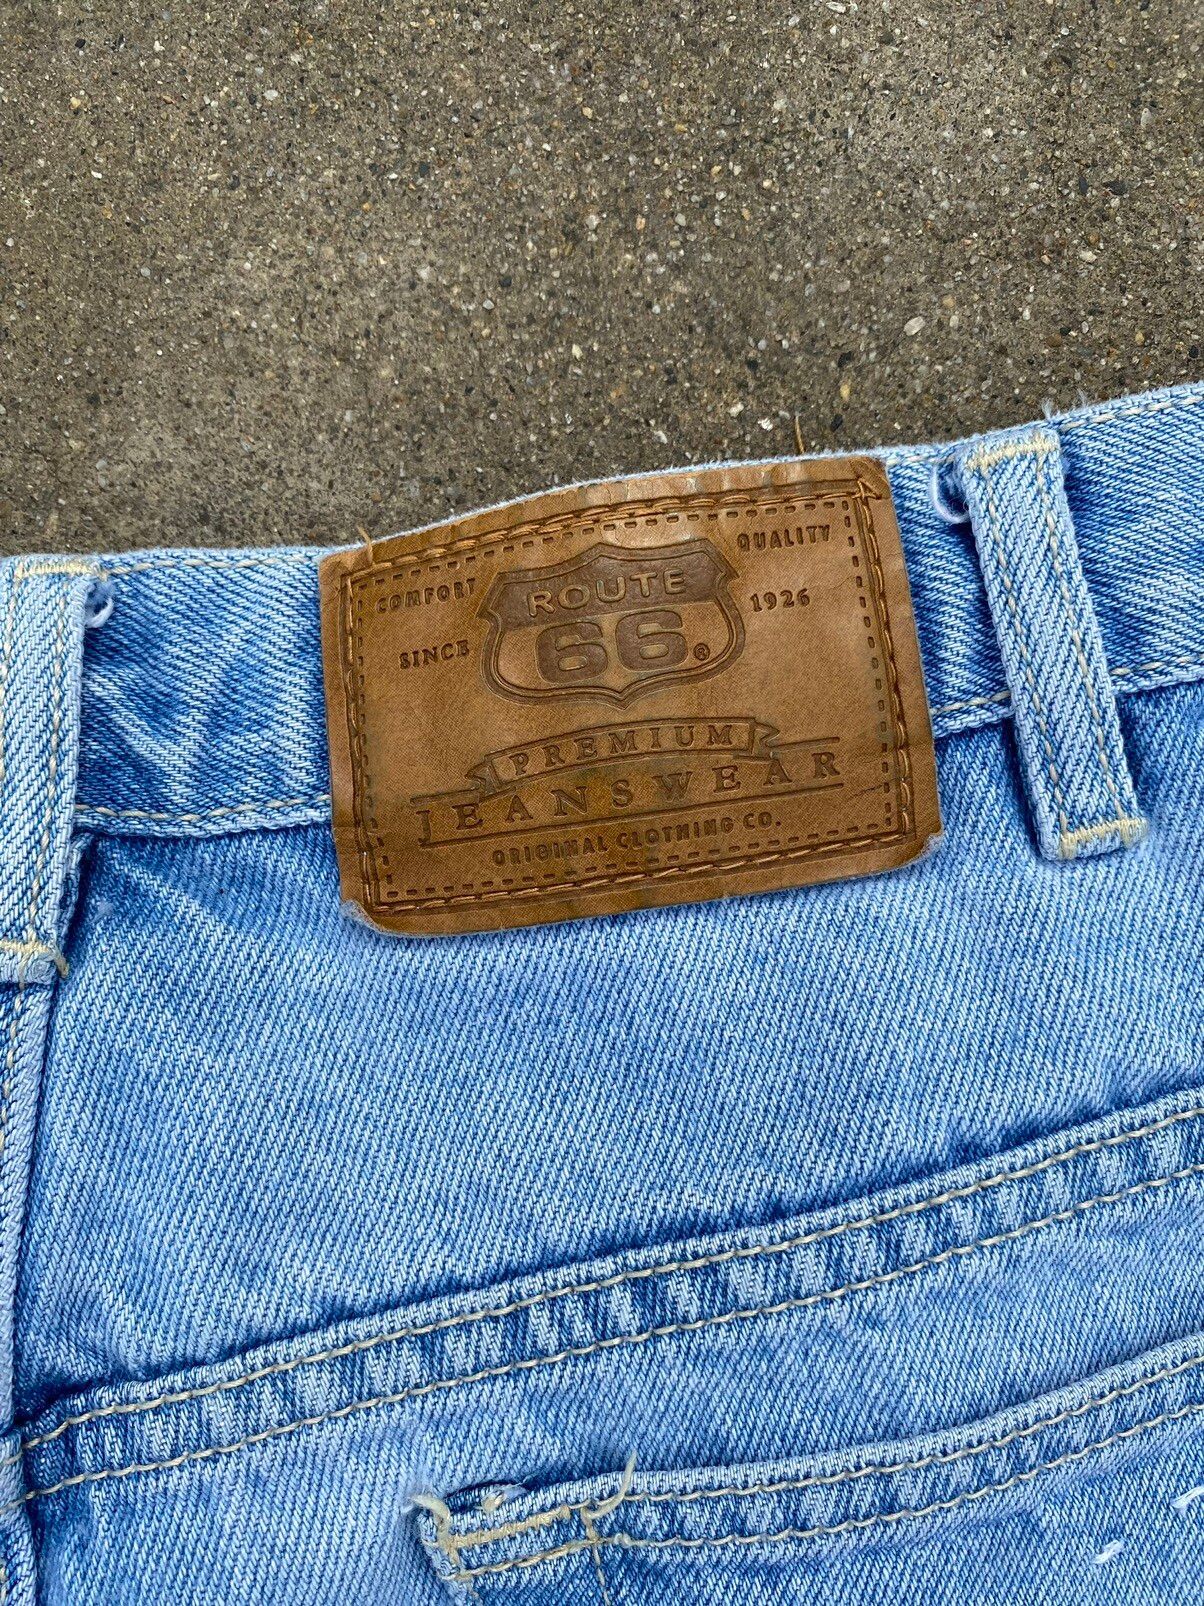 Vintage Vintage Route 66 shorts Size US 38 / EU 54 - 5 Thumbnail